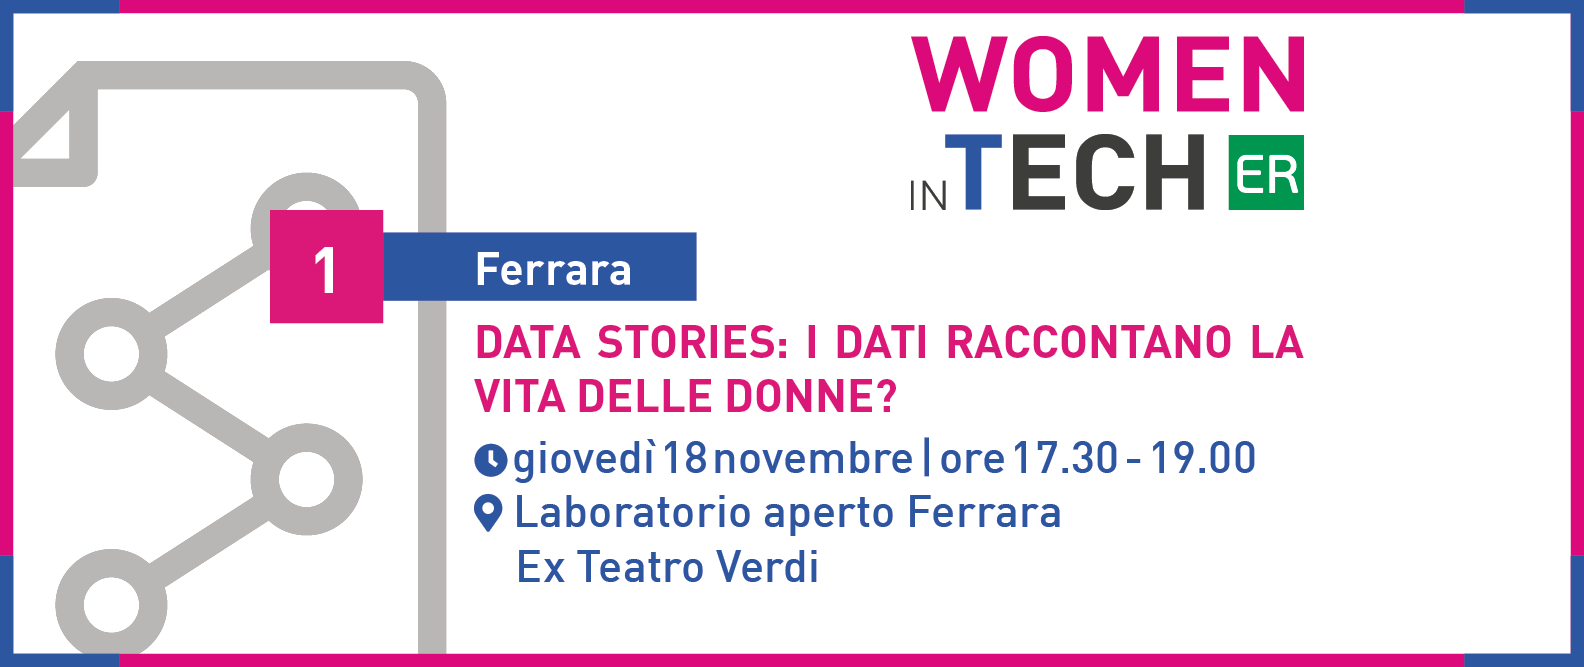 Data stories: al via il ciclo ‘Women in Tech’